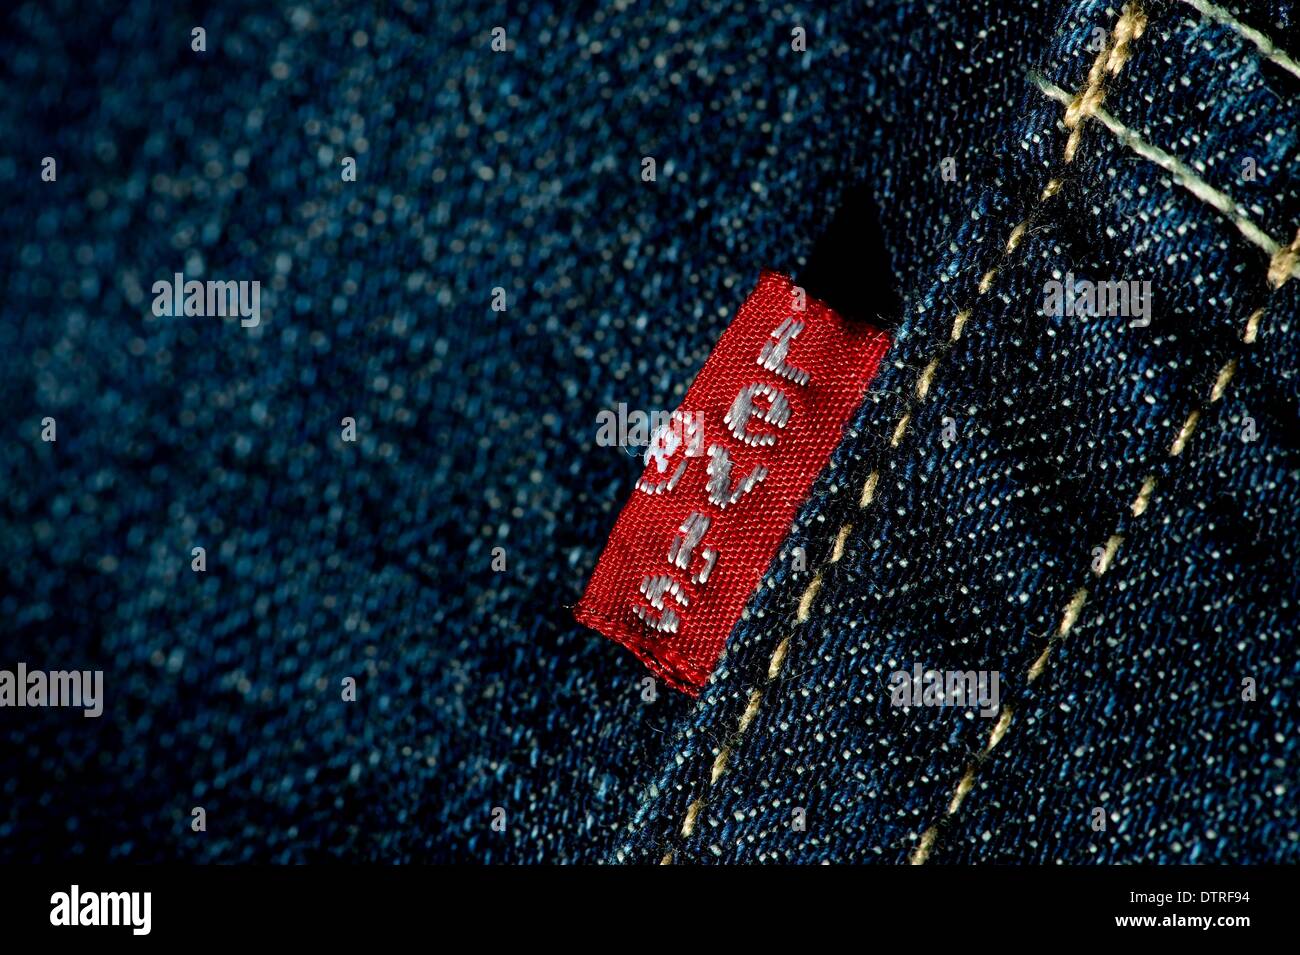 Ein Etikett lesen "Levis" auf ein paar Jeans von Levi Strauss & Co in  München, 23. Februar 2014. Foto: Sven Hoppe Stockfotografie - Alamy